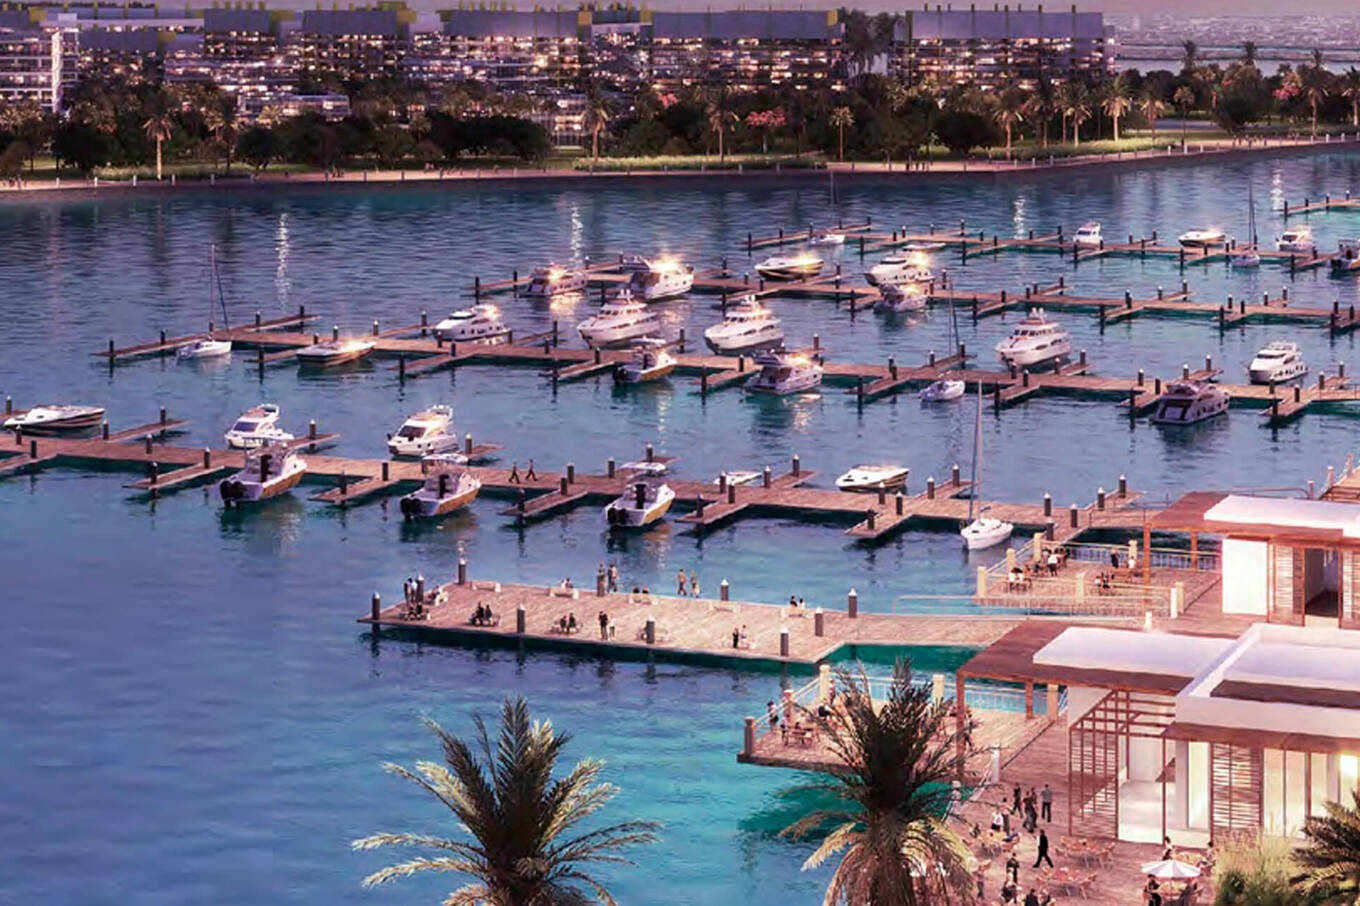 Dubai Islands